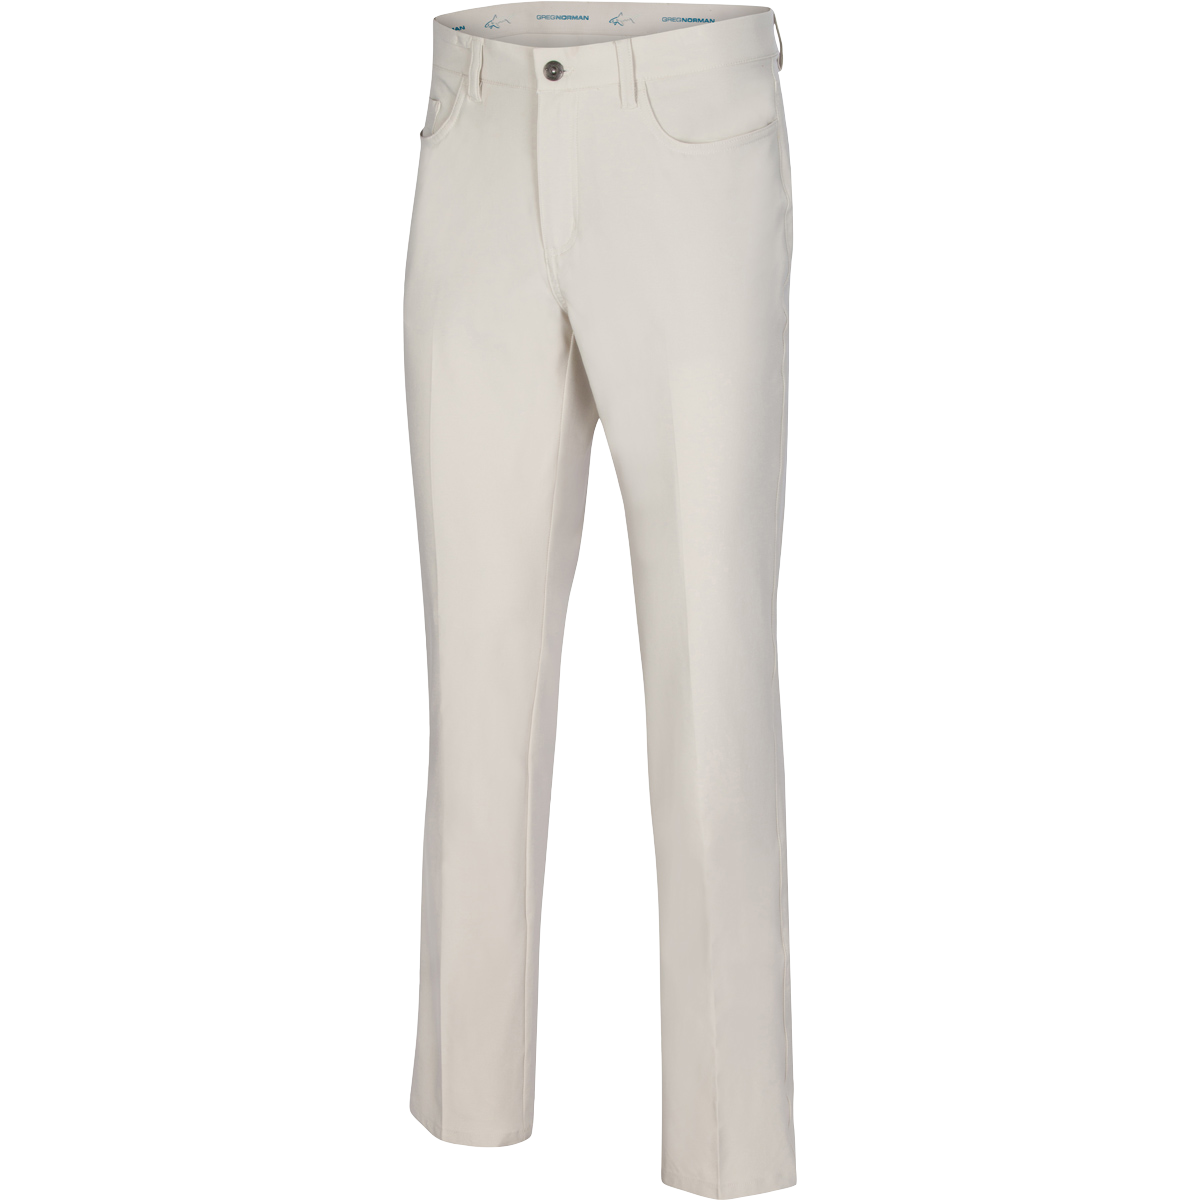 Greg Norman 5-Pocket Design Flat-Front Dress Pants Pants for Men